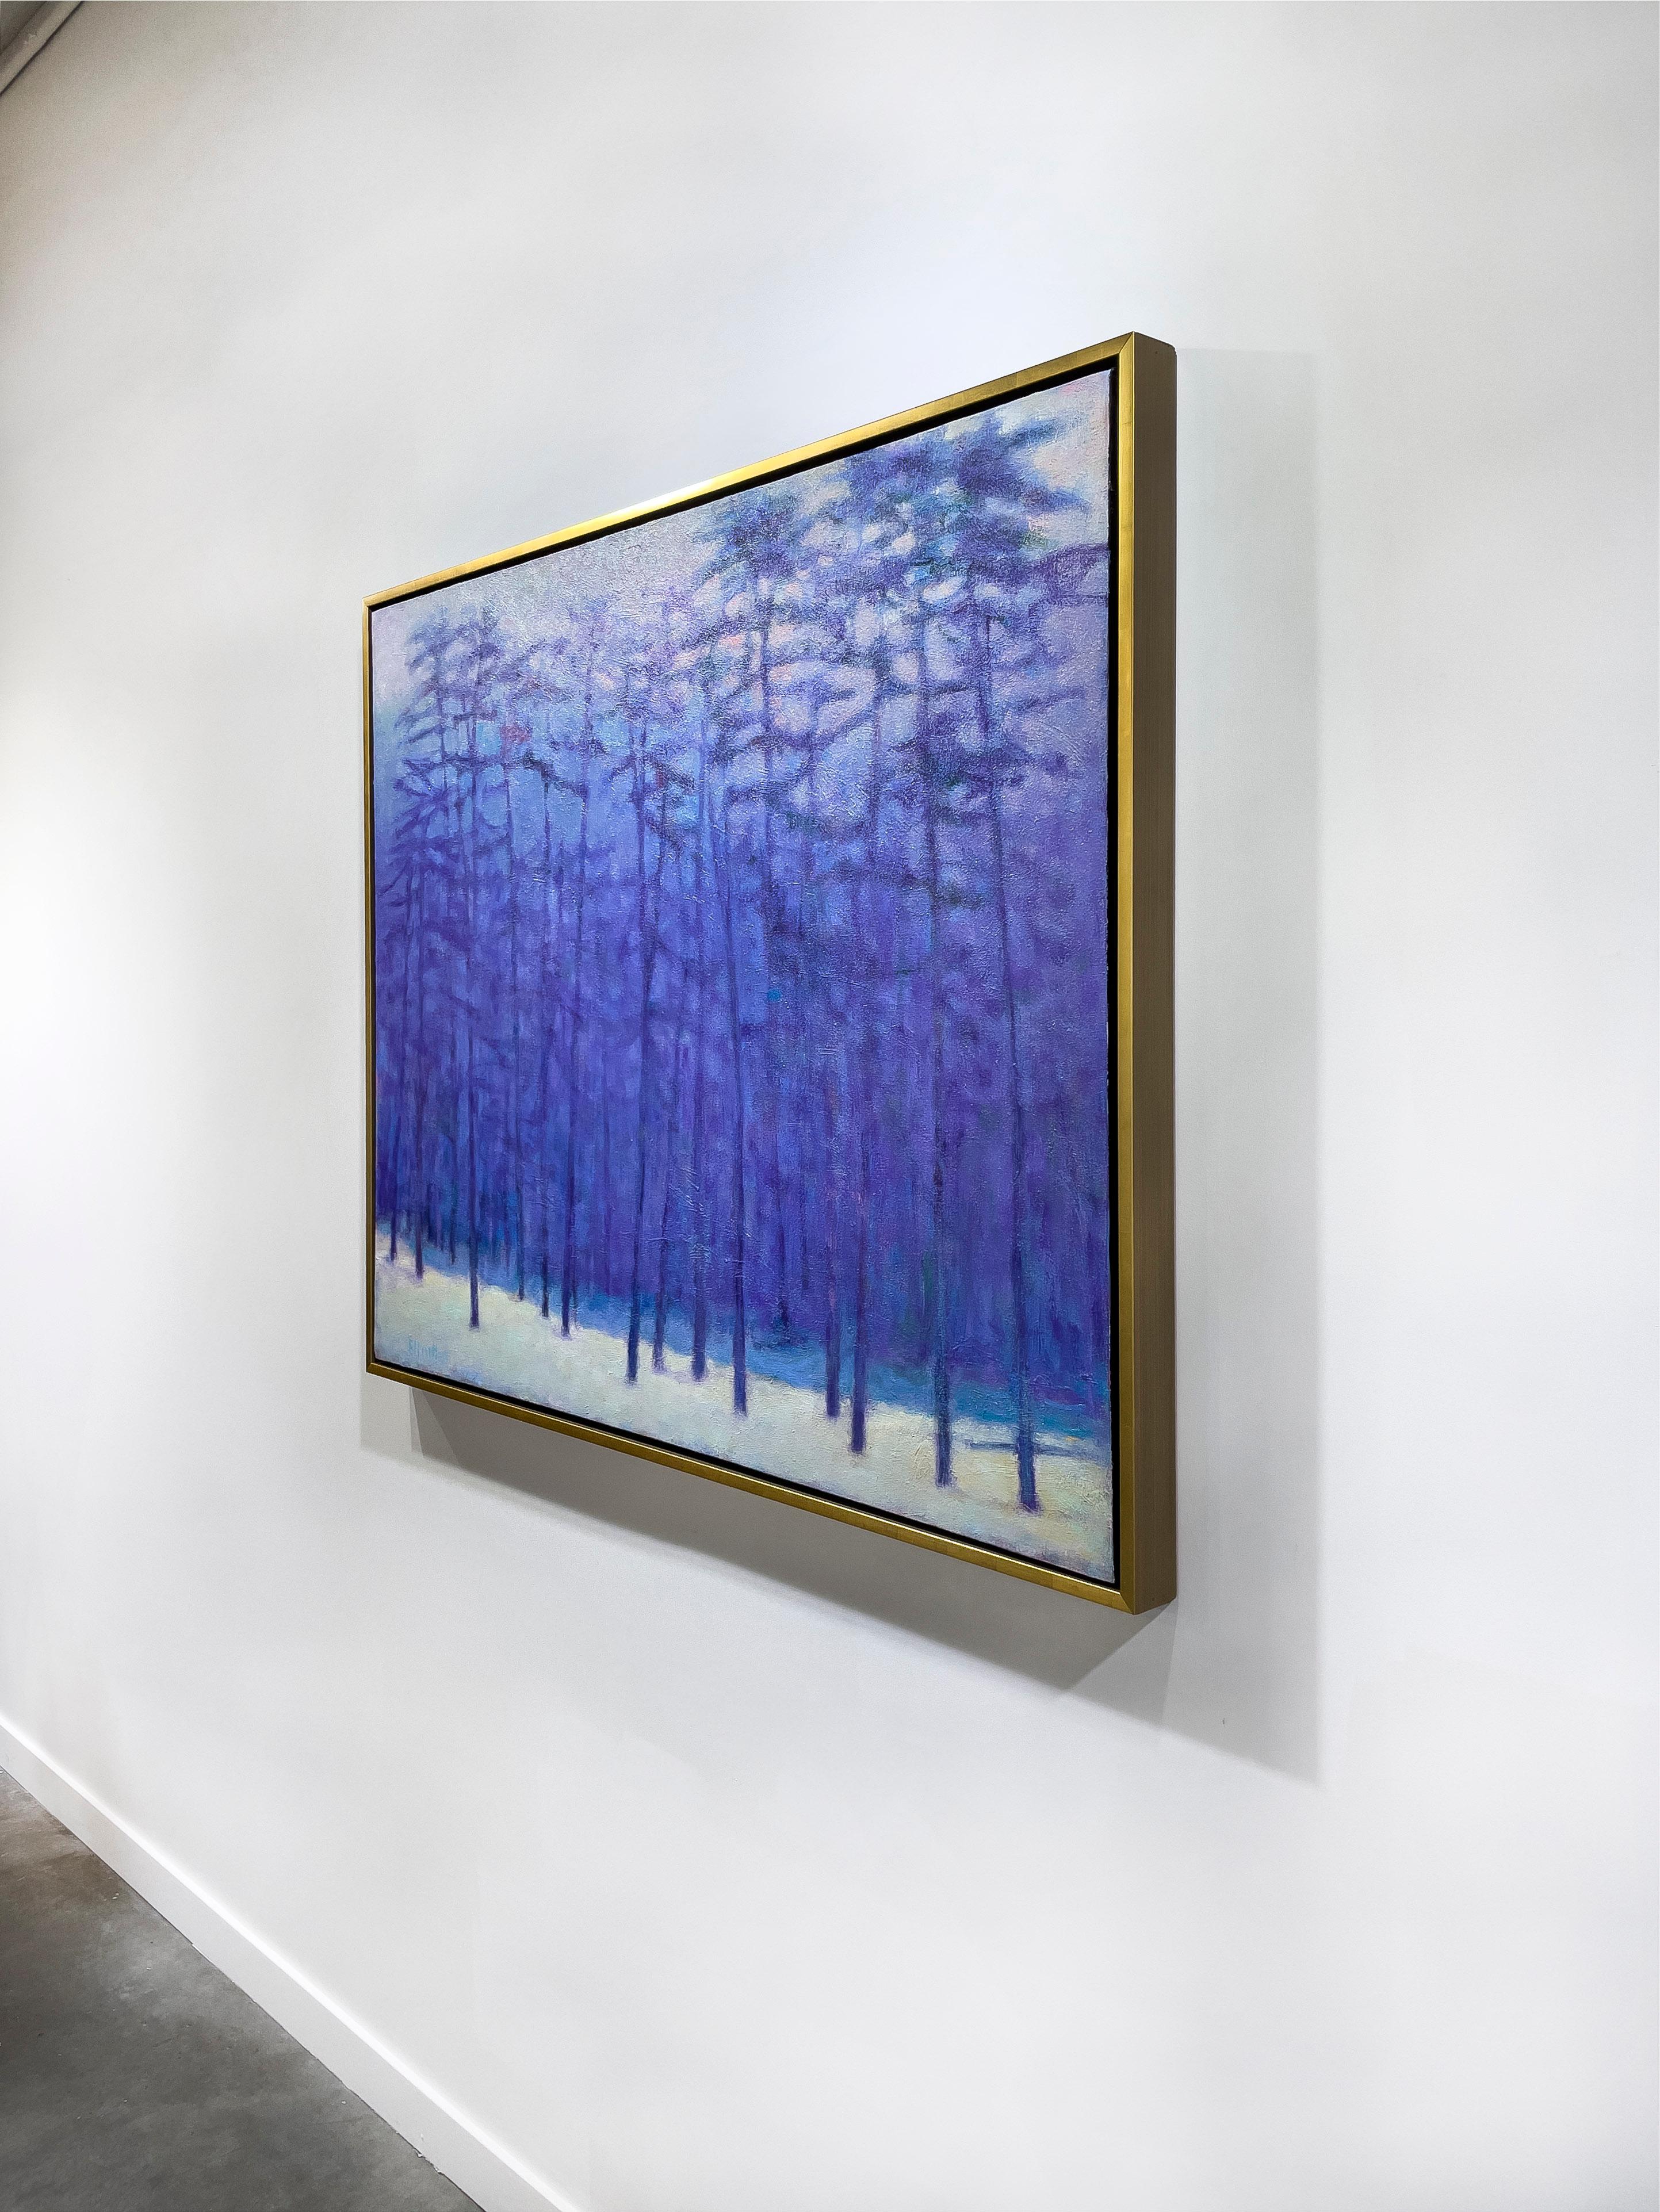 Questo quadro di paesaggio astratto contemporaneo di Ken Elliott è realizzato con colori a olio su tela. La tavolozza è caratterizzata da una fresca tonalità di blu-viola, che cattura una scena astratta di una foresta in inverno. Gli alberi sono